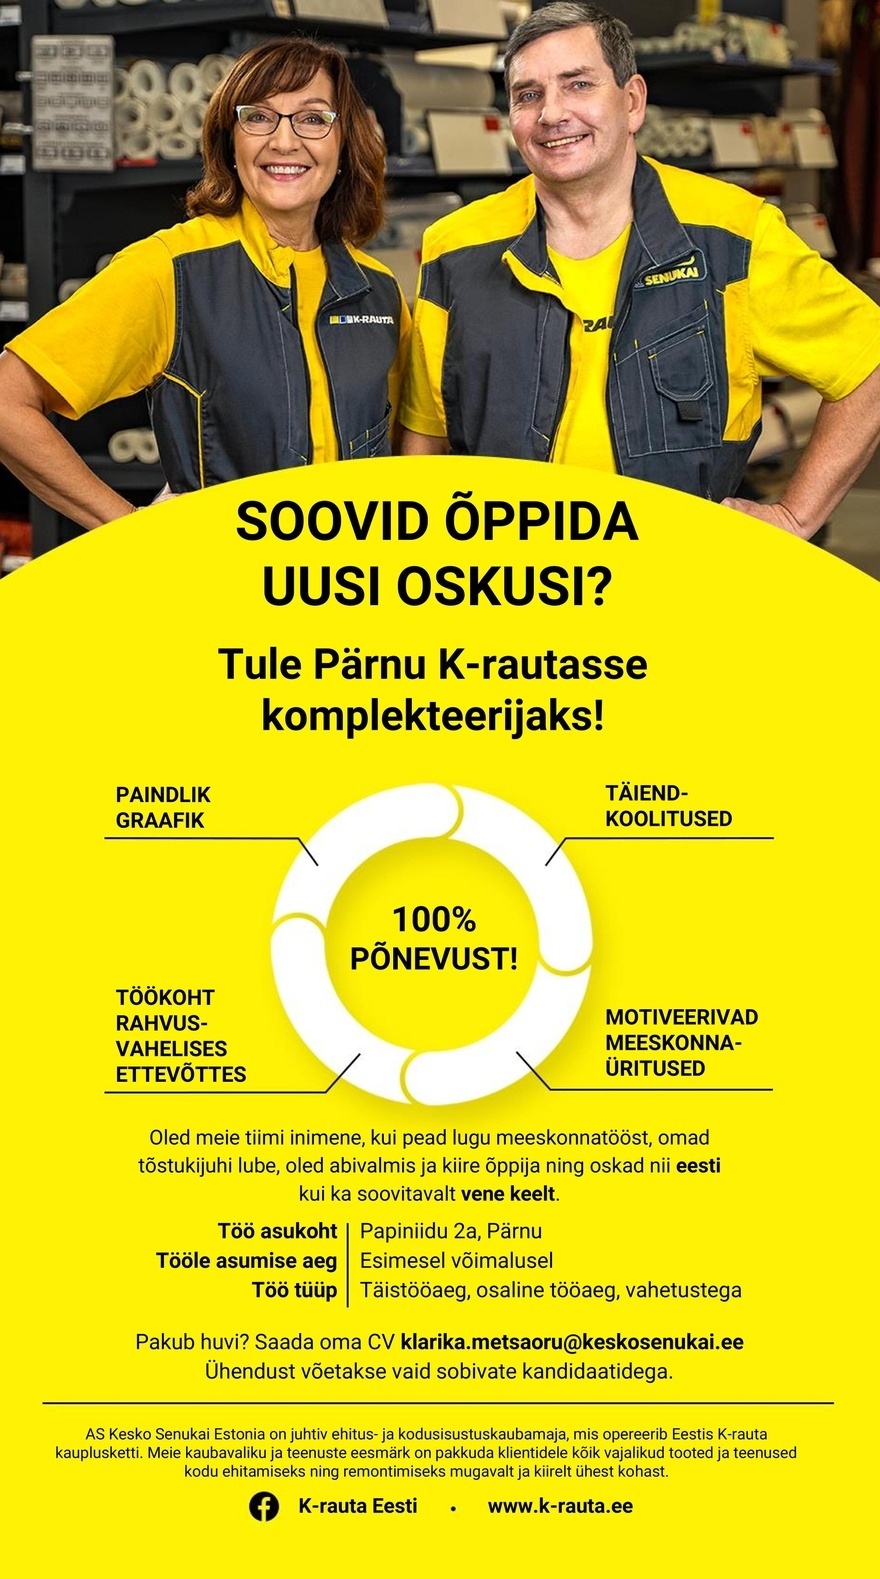 Kesko Senukai Estonia AS Kauba komplekteerija Pärnu K-rauta kauplusesse